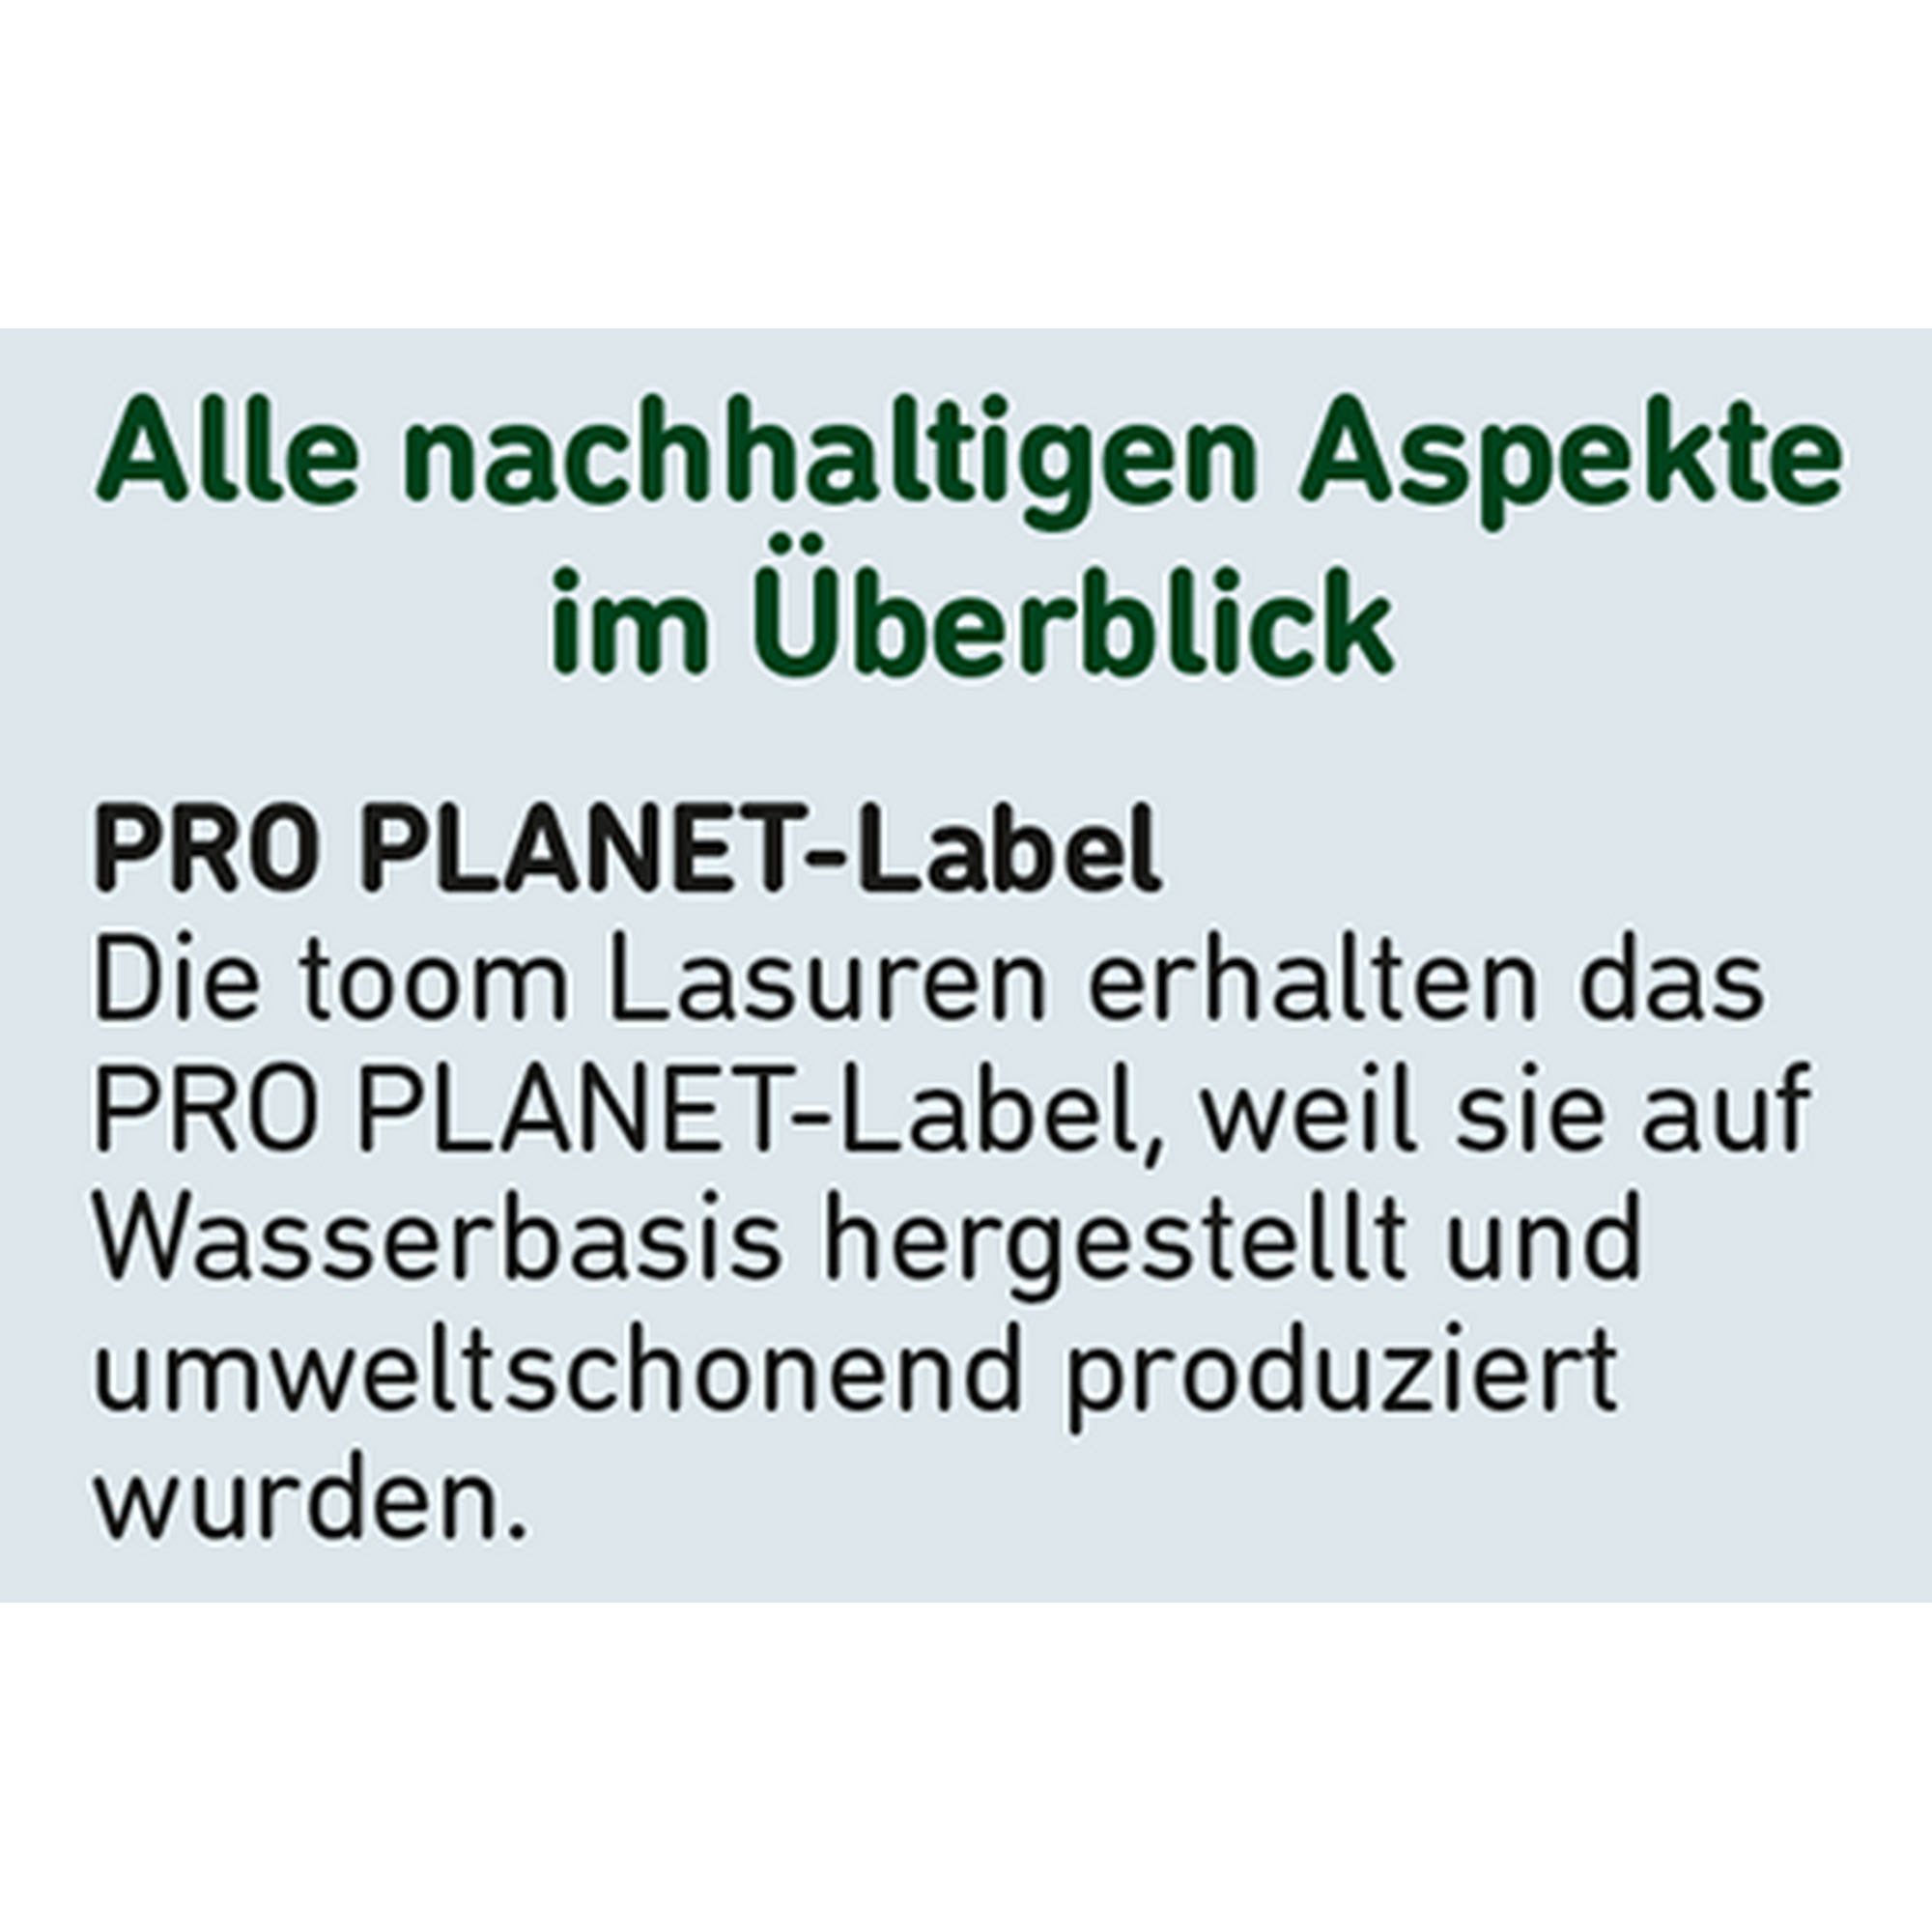 Wetterschutz-Lasur anthrazitfarben 2,5 l + product picture